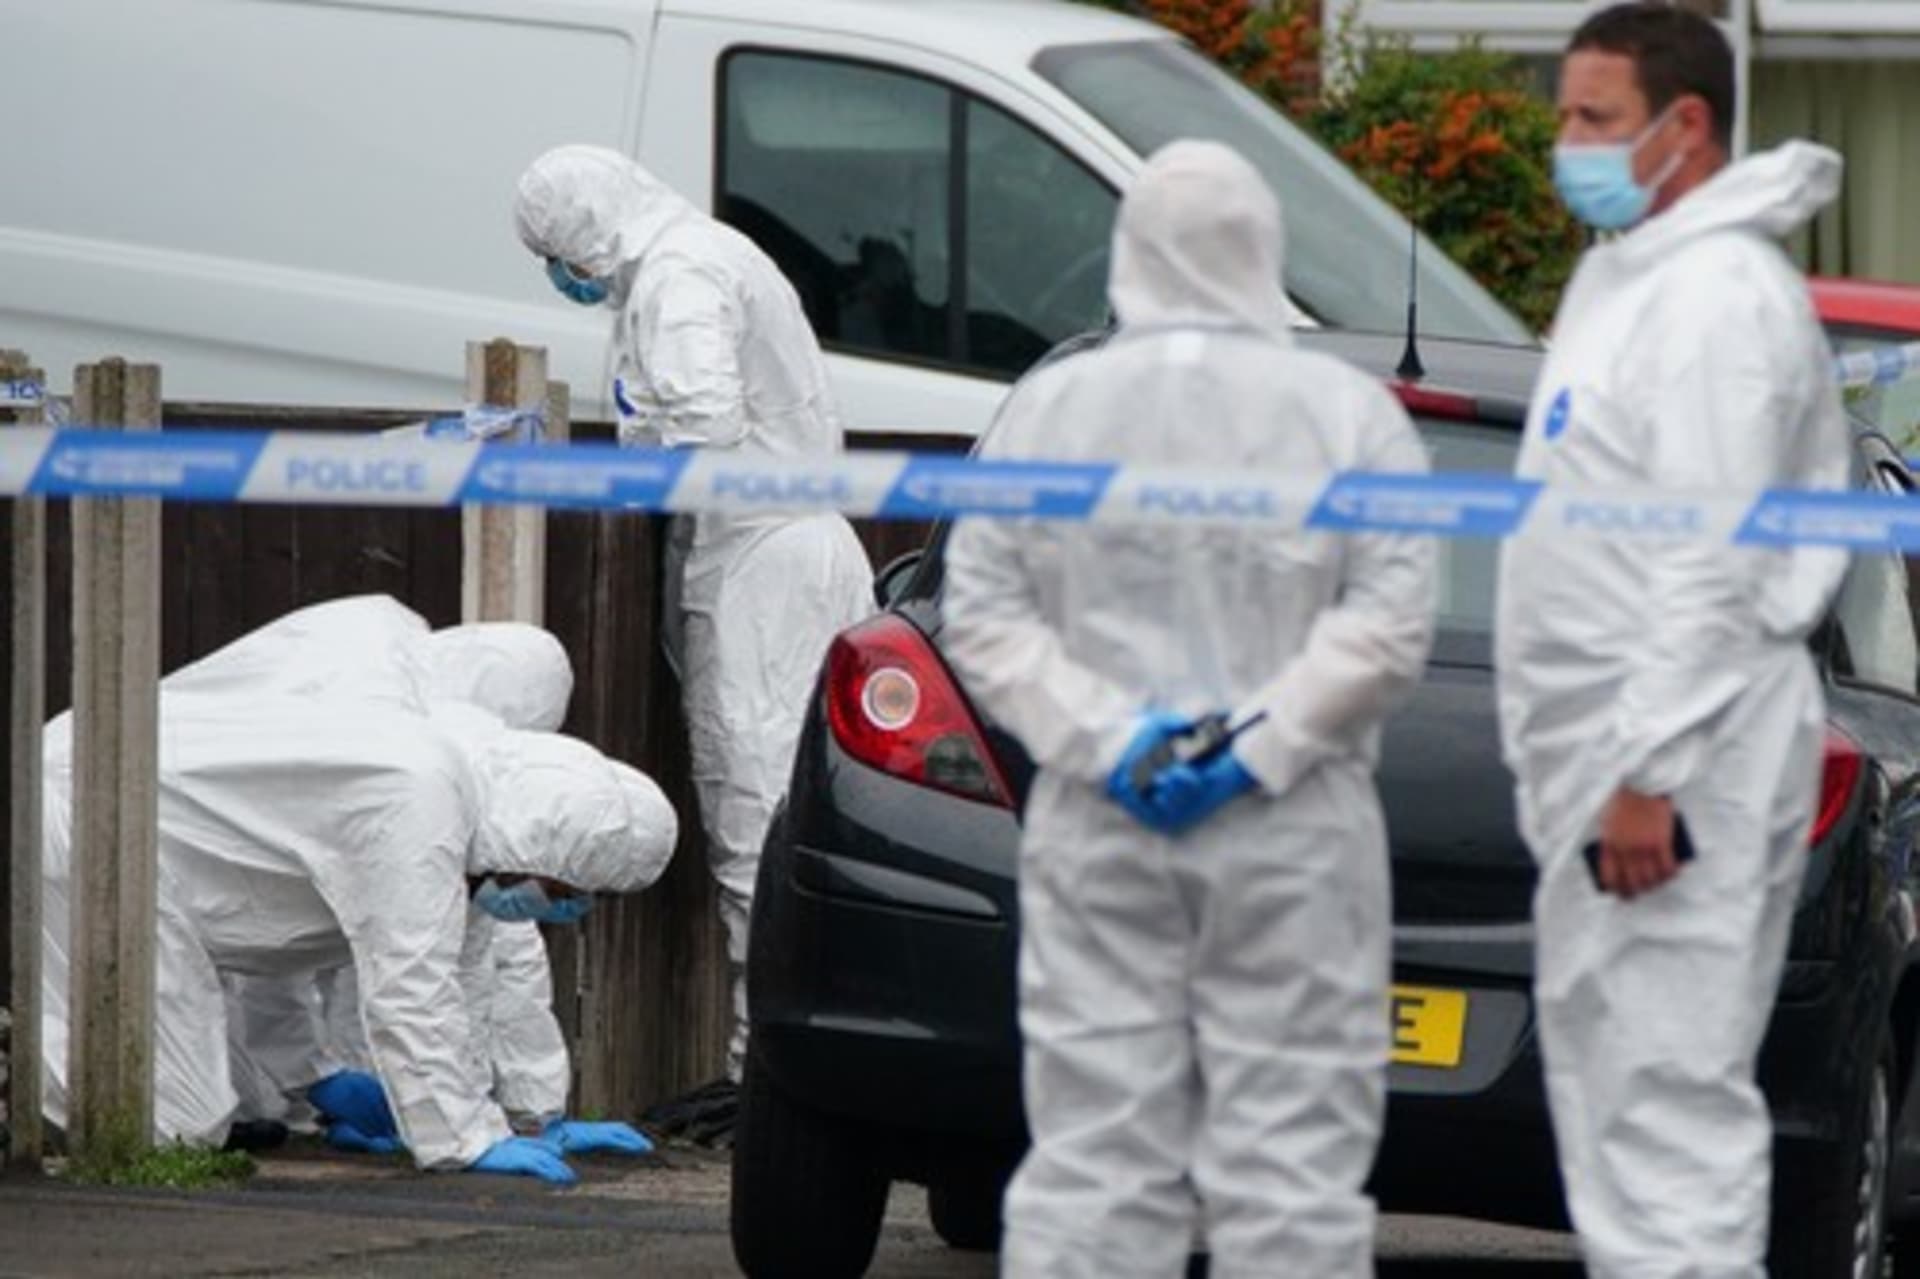 Velká Británie je v šoku ze smrti 9leté holčičky, kterou v liverpoolském domě zabil neznámý střelec.